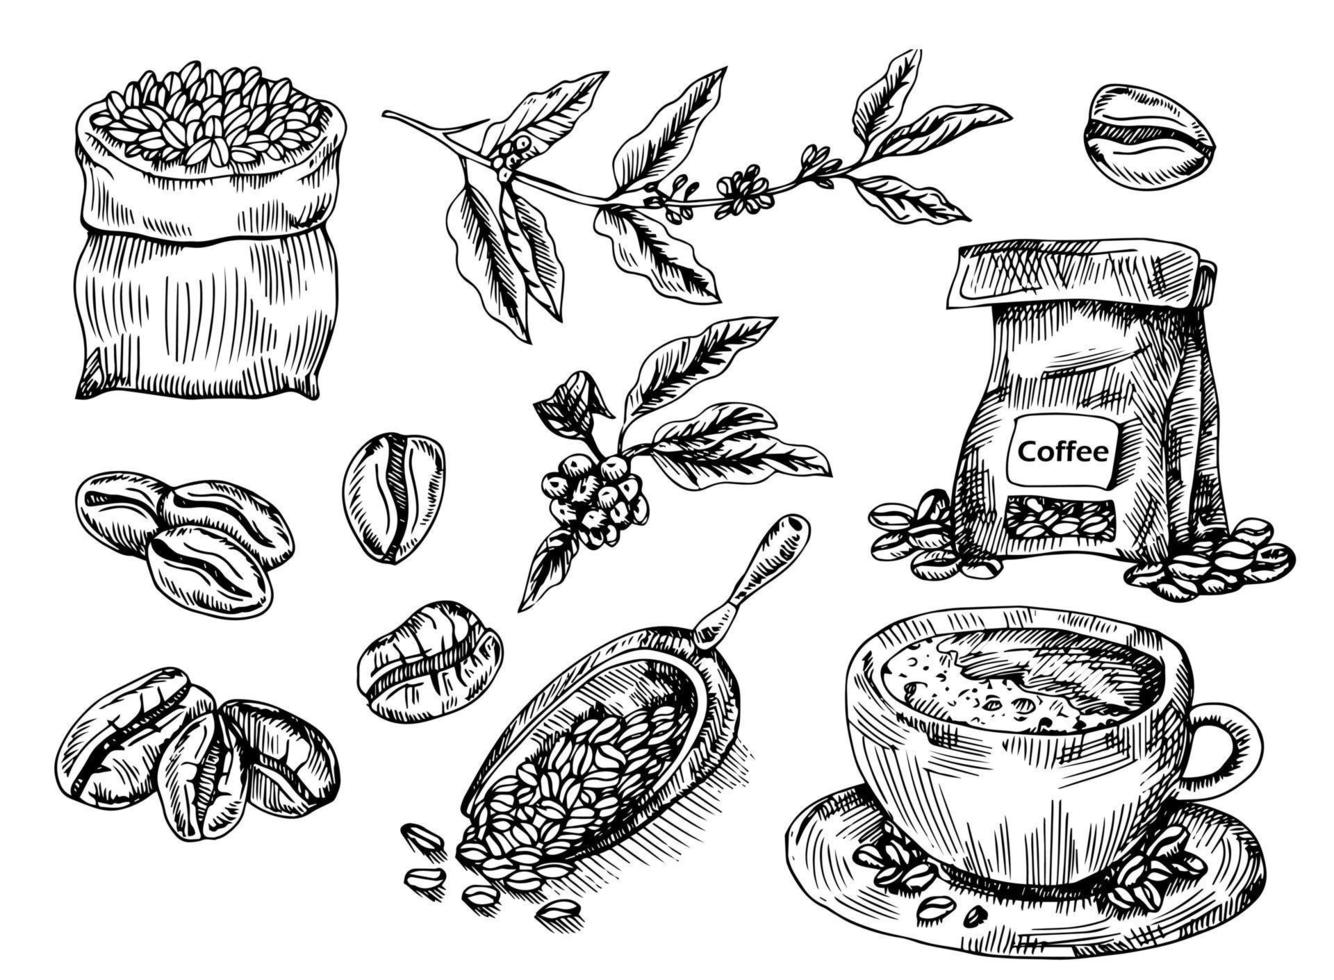 service à café avec branche de café, grains de café, mauvais café, boule de café. illustration vectorielle dessinée à la main dans le style de croquis. dessiné à l'encre. vecteur